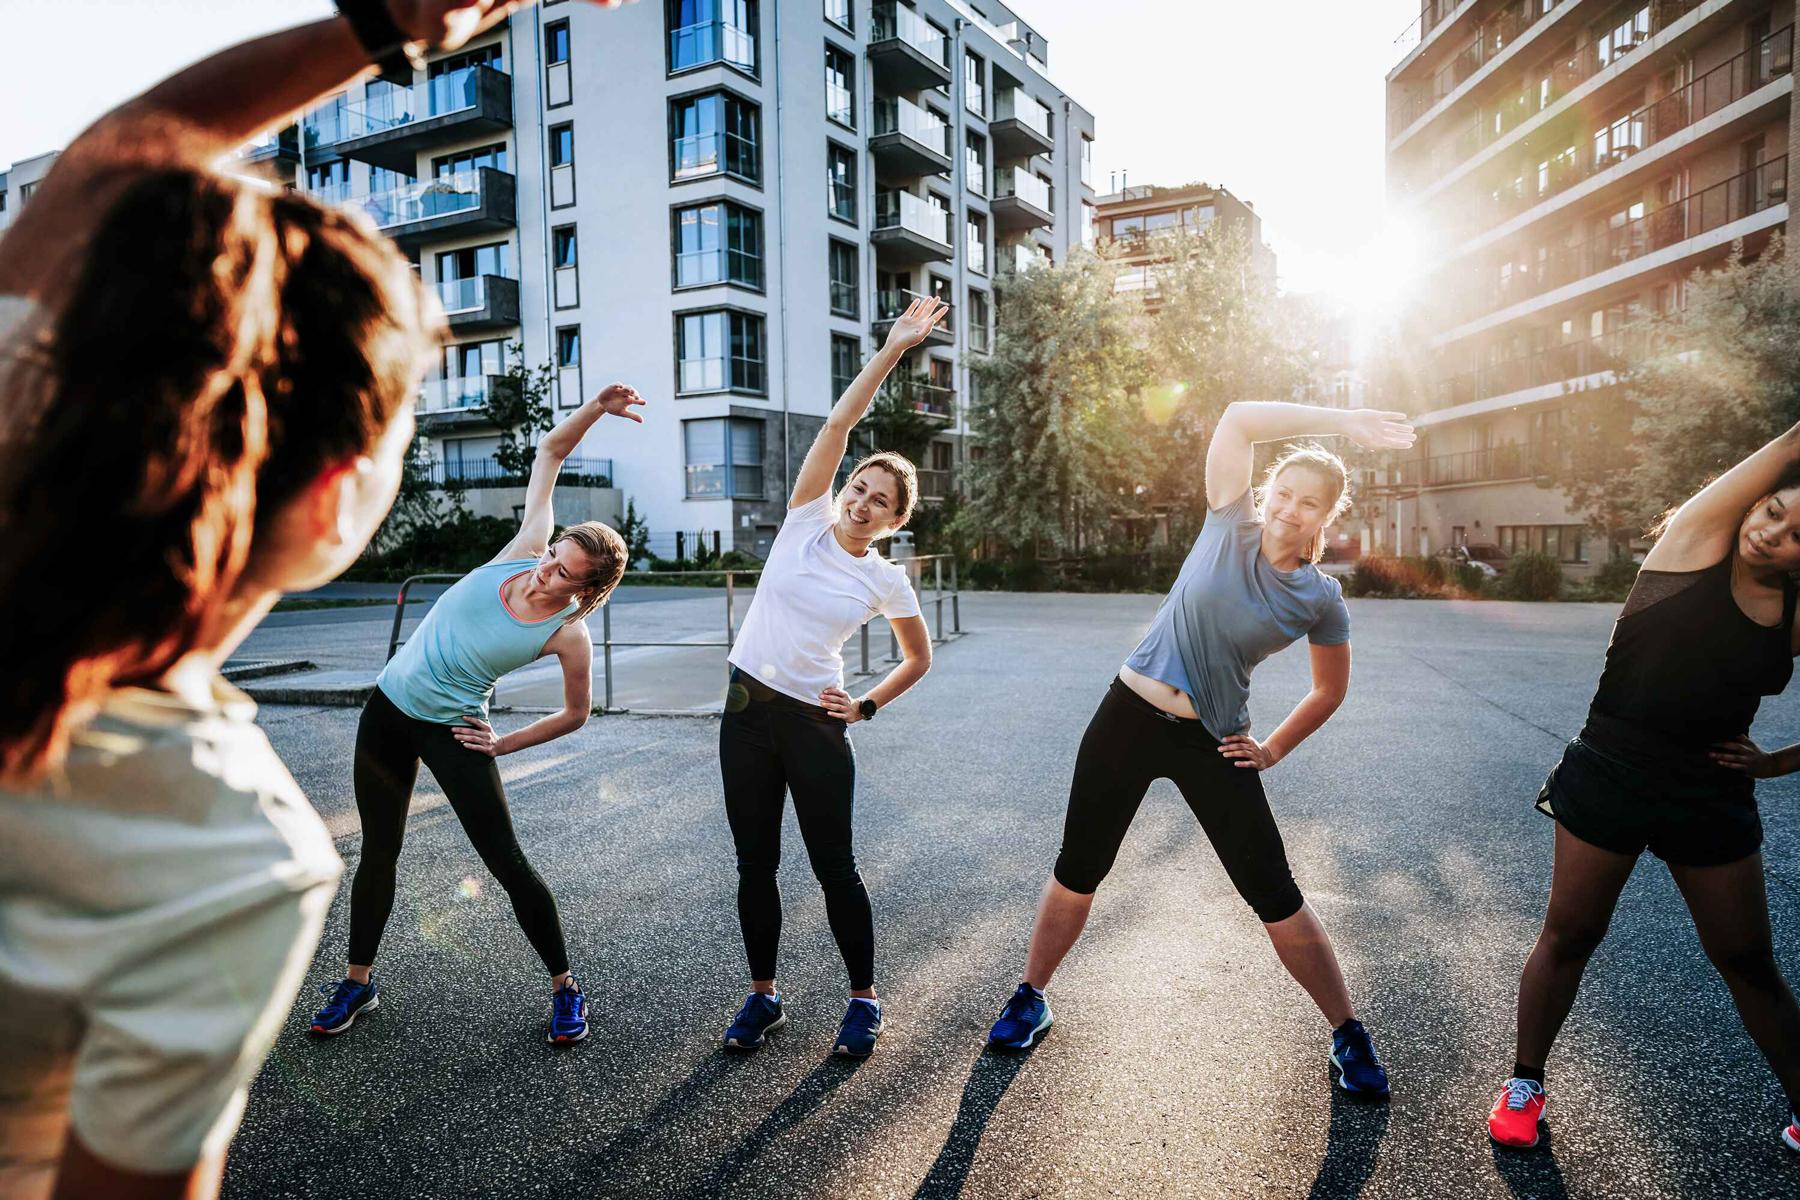 In einer urbanen Umgebung treiben 4 junge Frauen Sport. Die Sonne scheint.